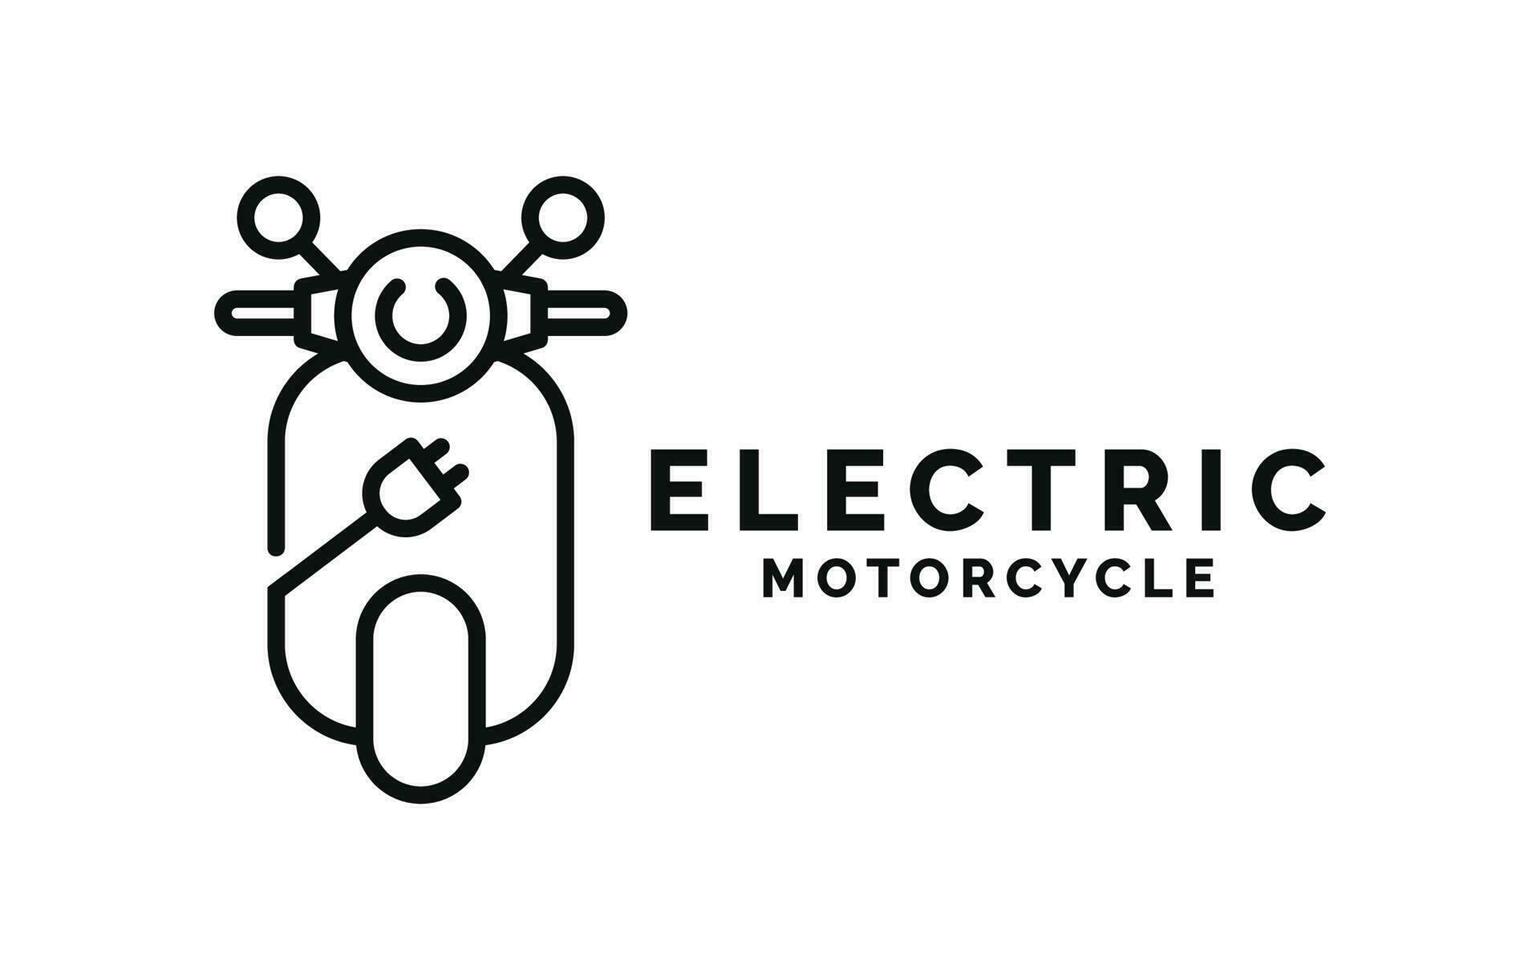 elettrico motociclo logo design vettore